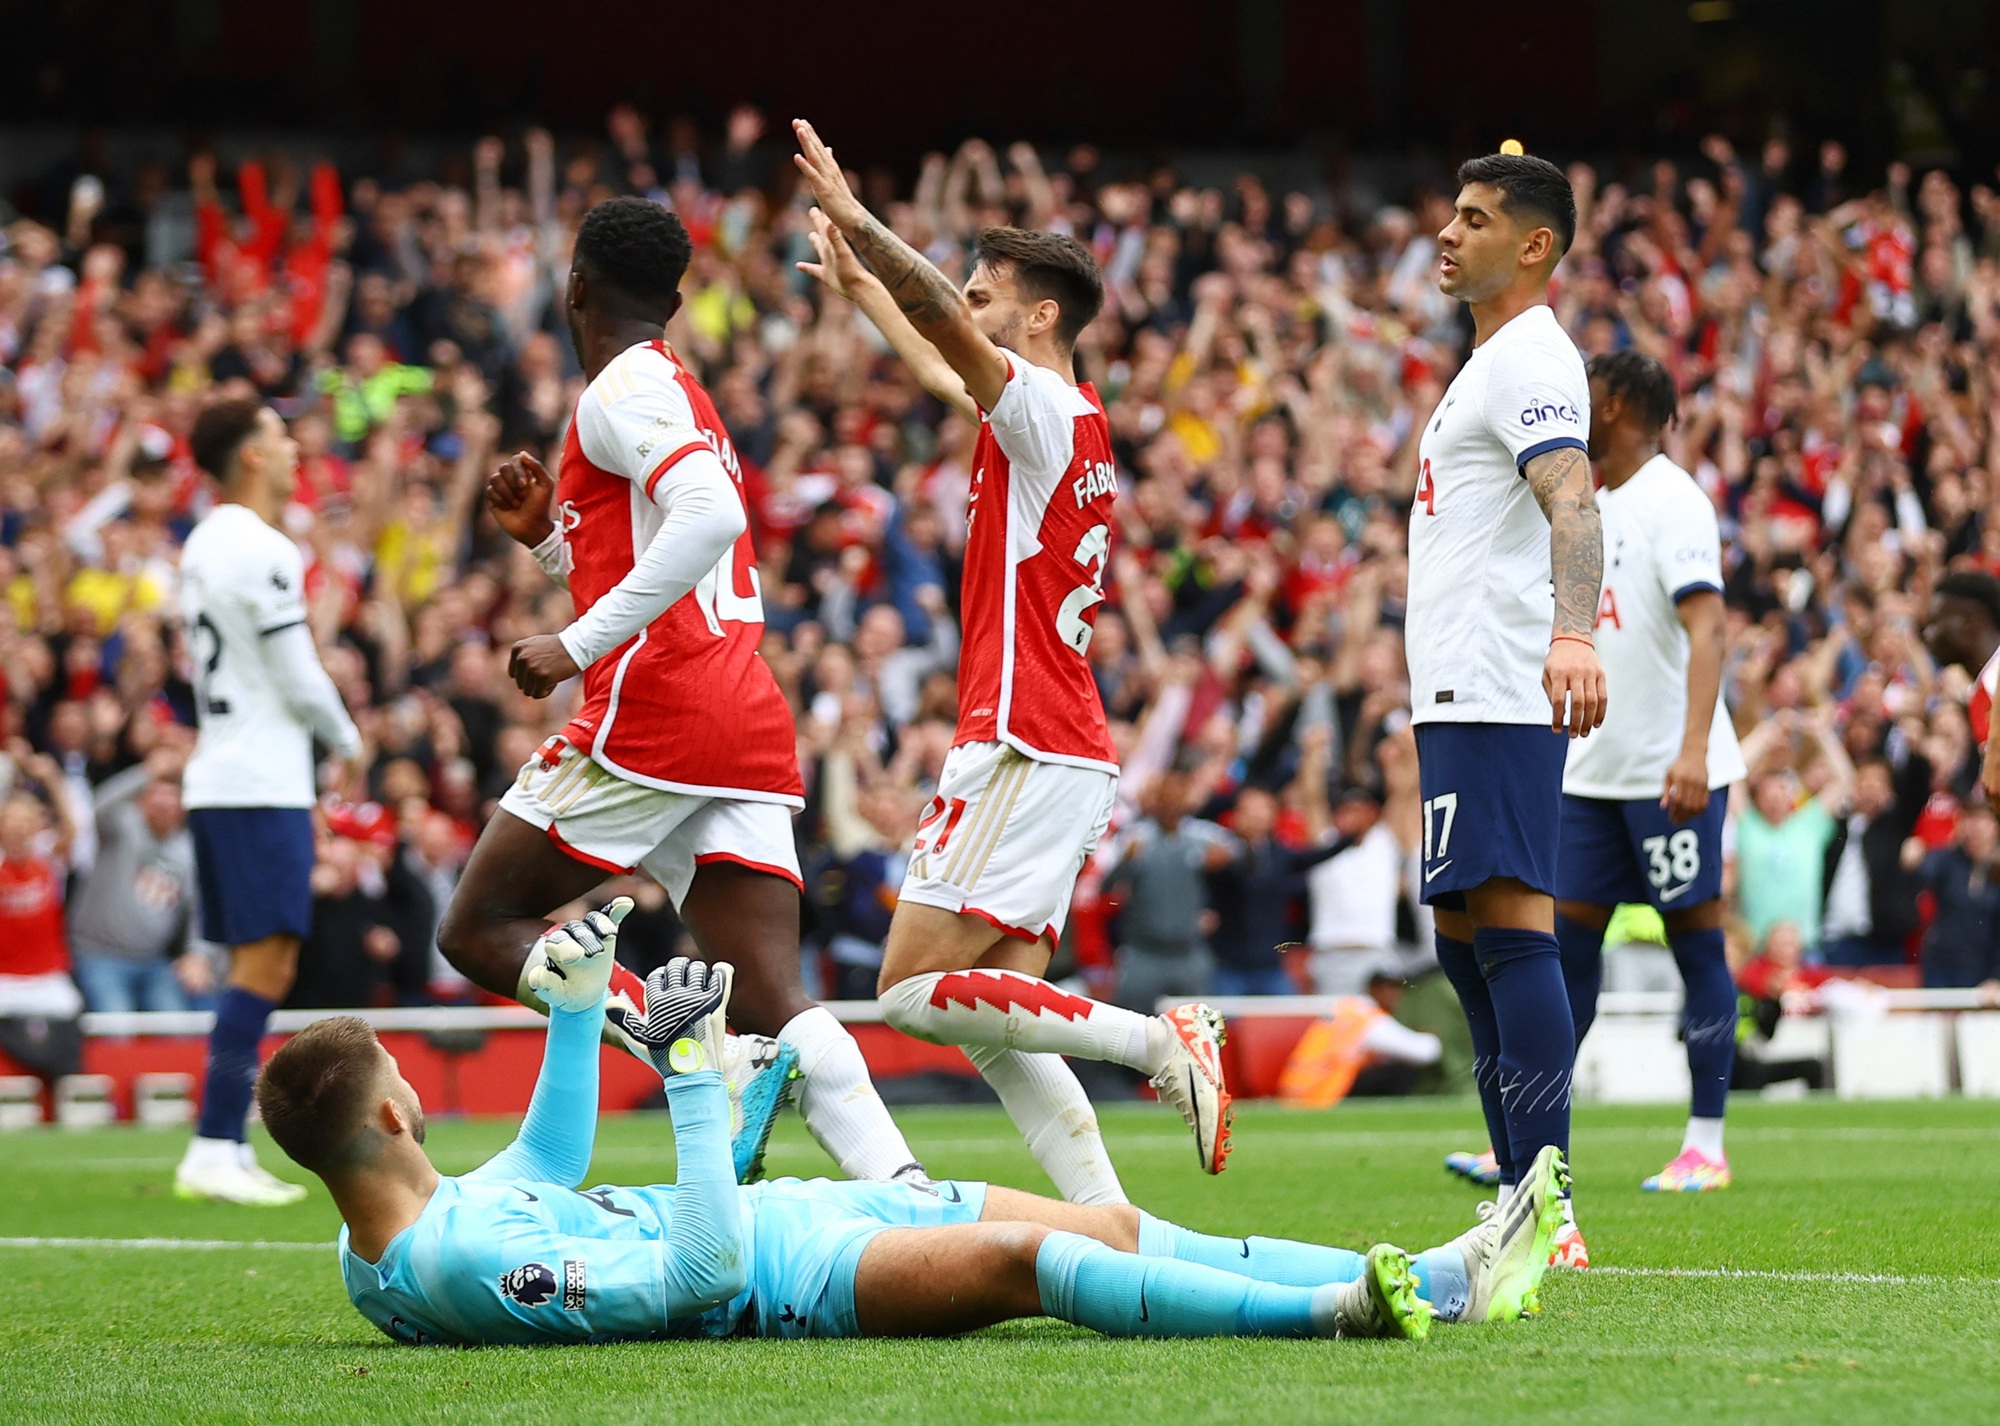 Rượt đuổi kịch tính, Tottenham cầm chân Arsenal  - Ảnh 2.